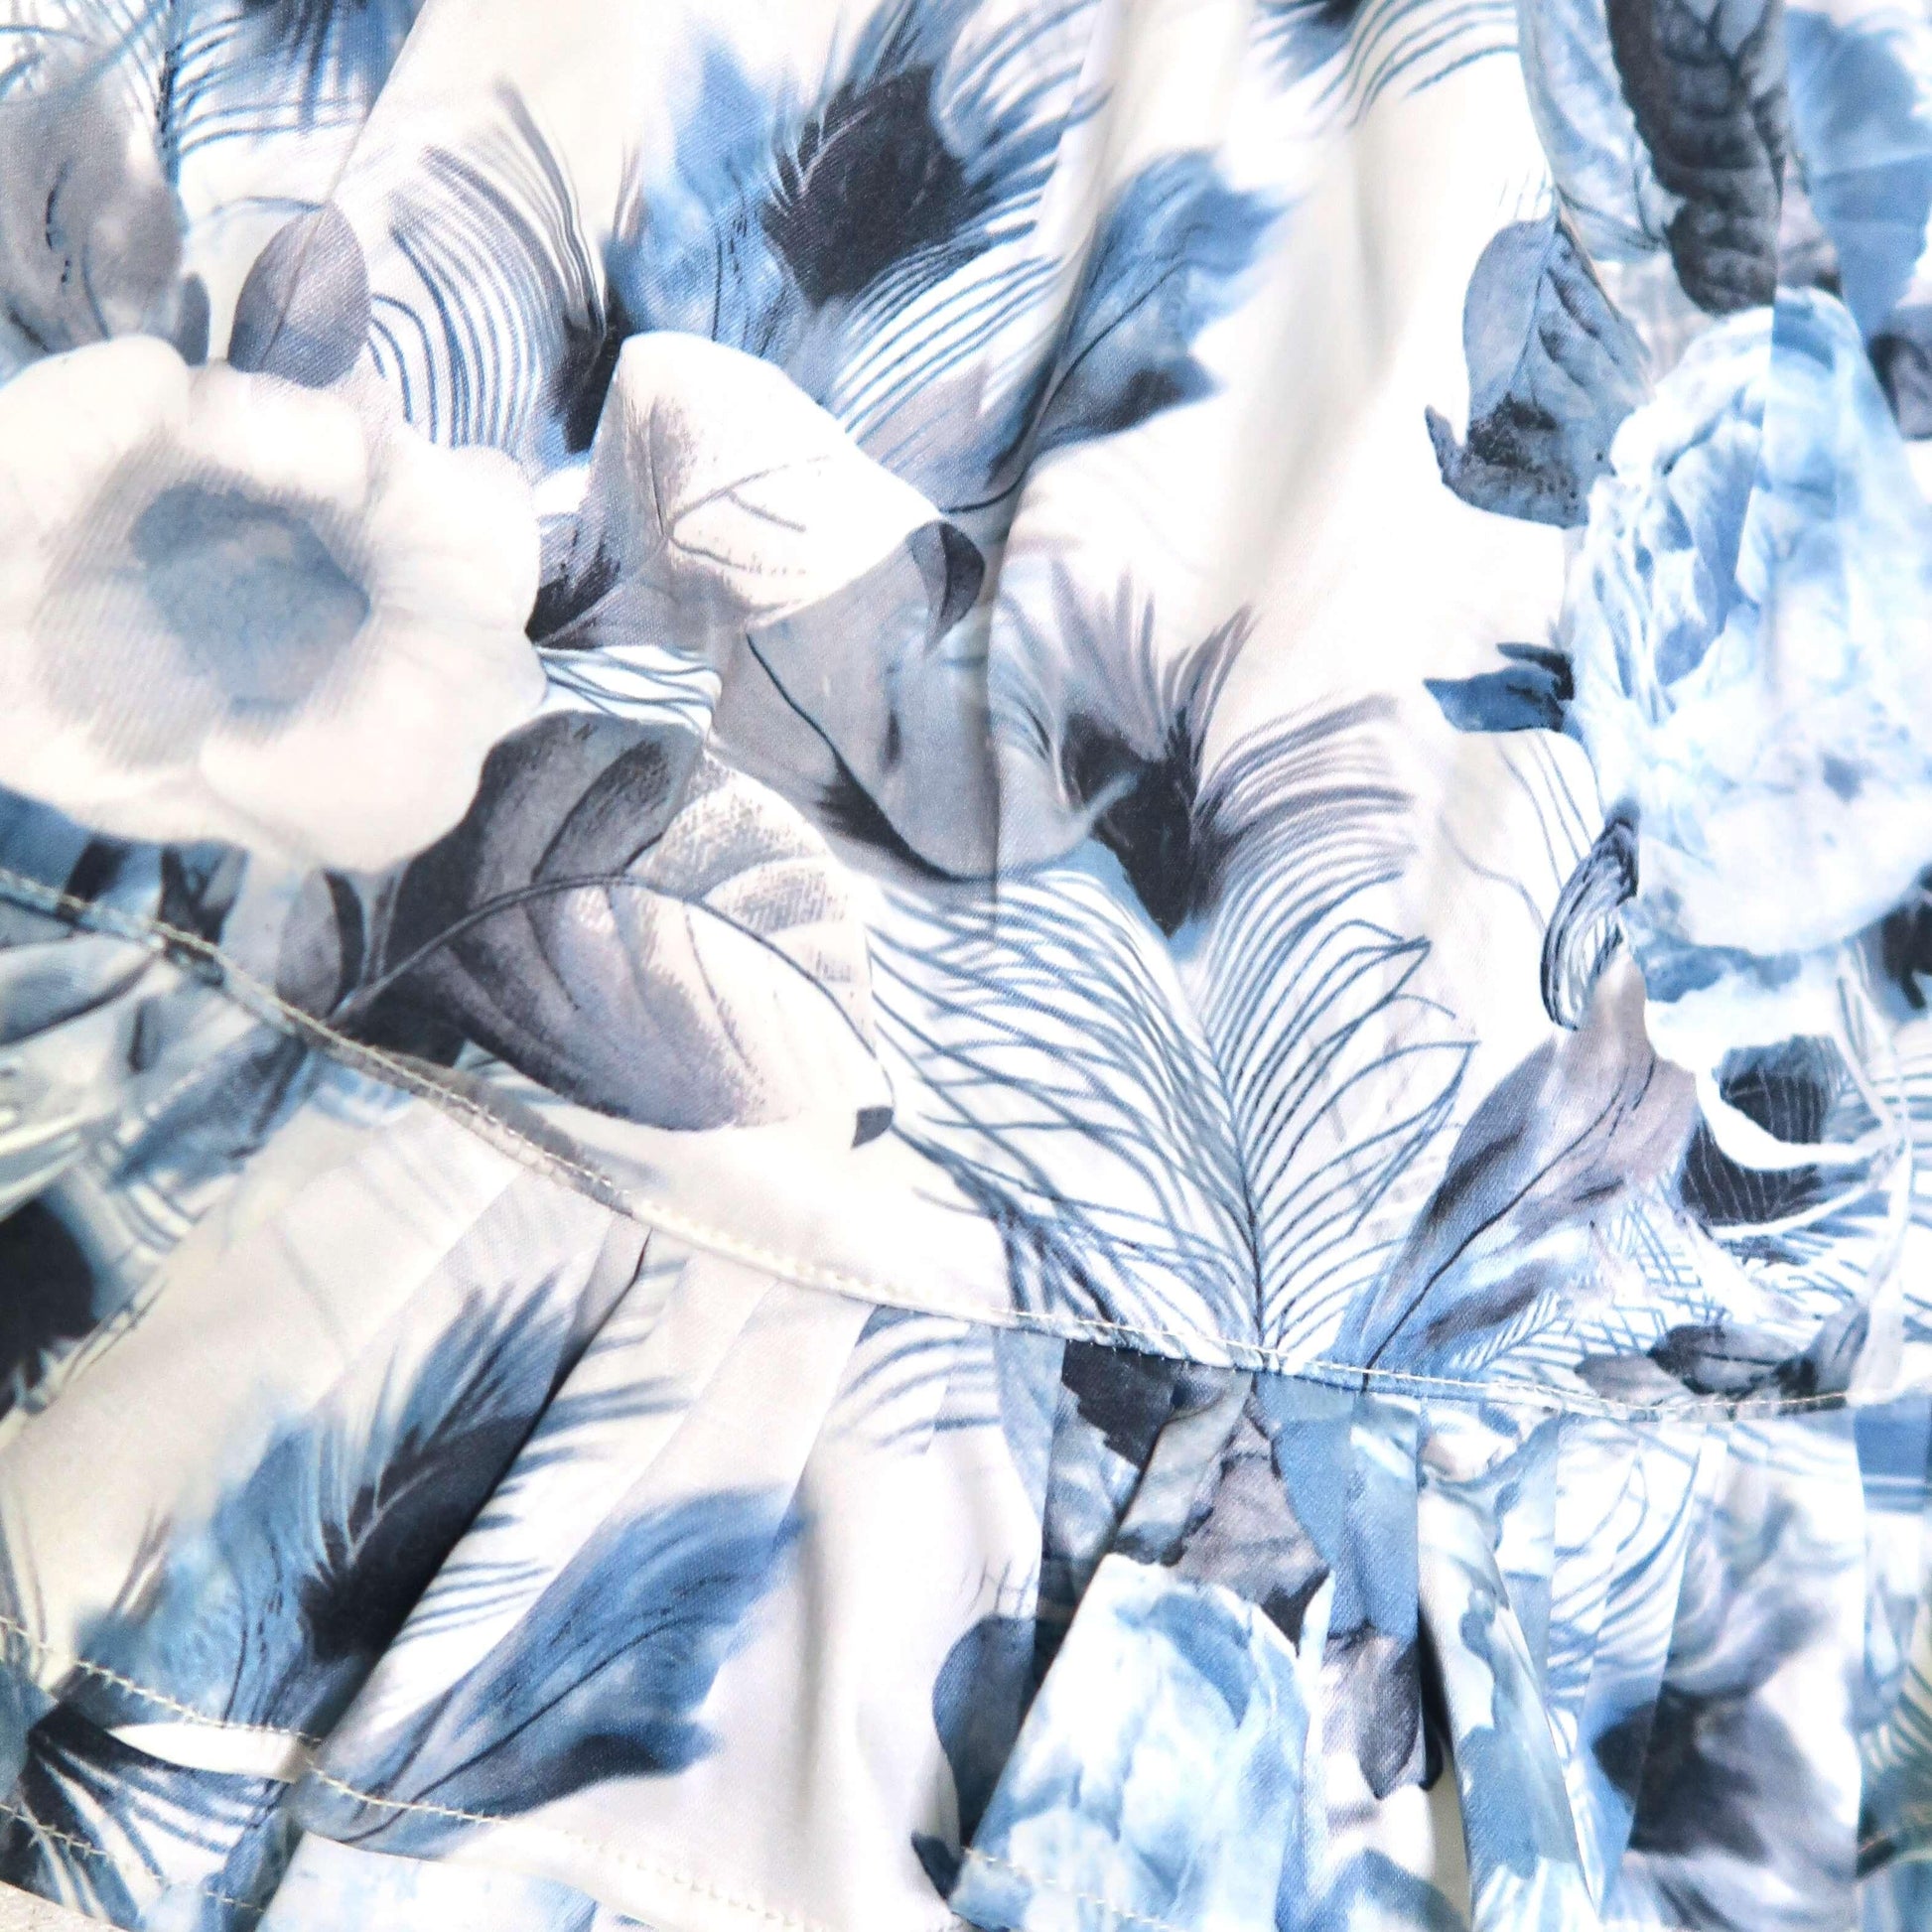 Dahlia Dress in Blue Feather Sateen Print - Lil' Tati